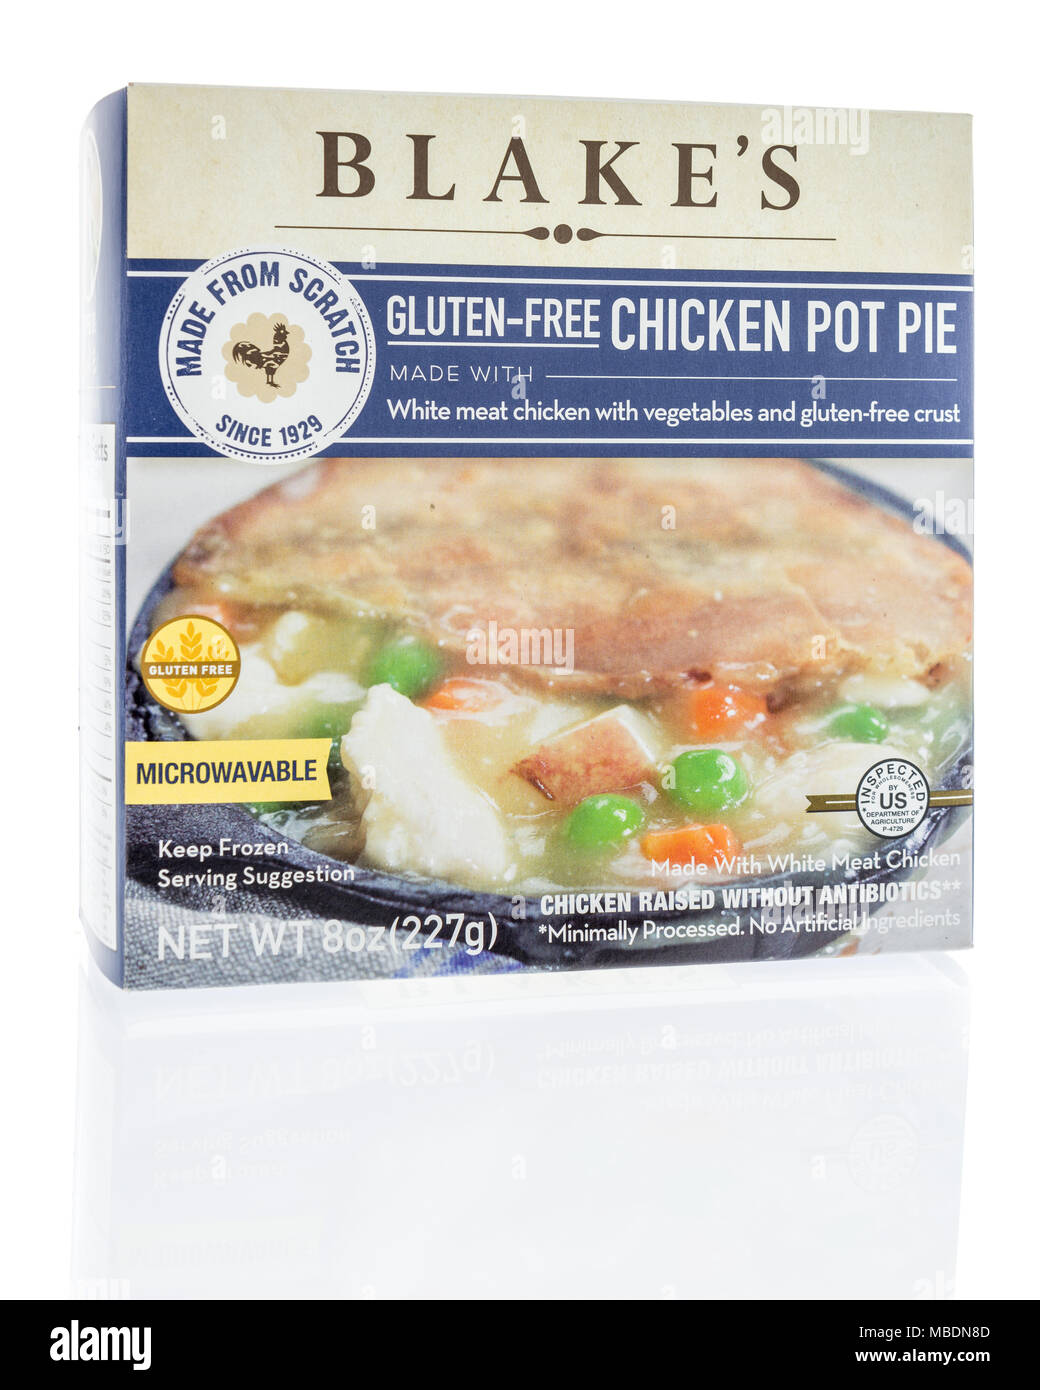 Winneconne, WI - 7 Avril 2018 : une boîte de Blakes gluten-free Chicken Pot Pie sur un fond isolé. Banque D'Images